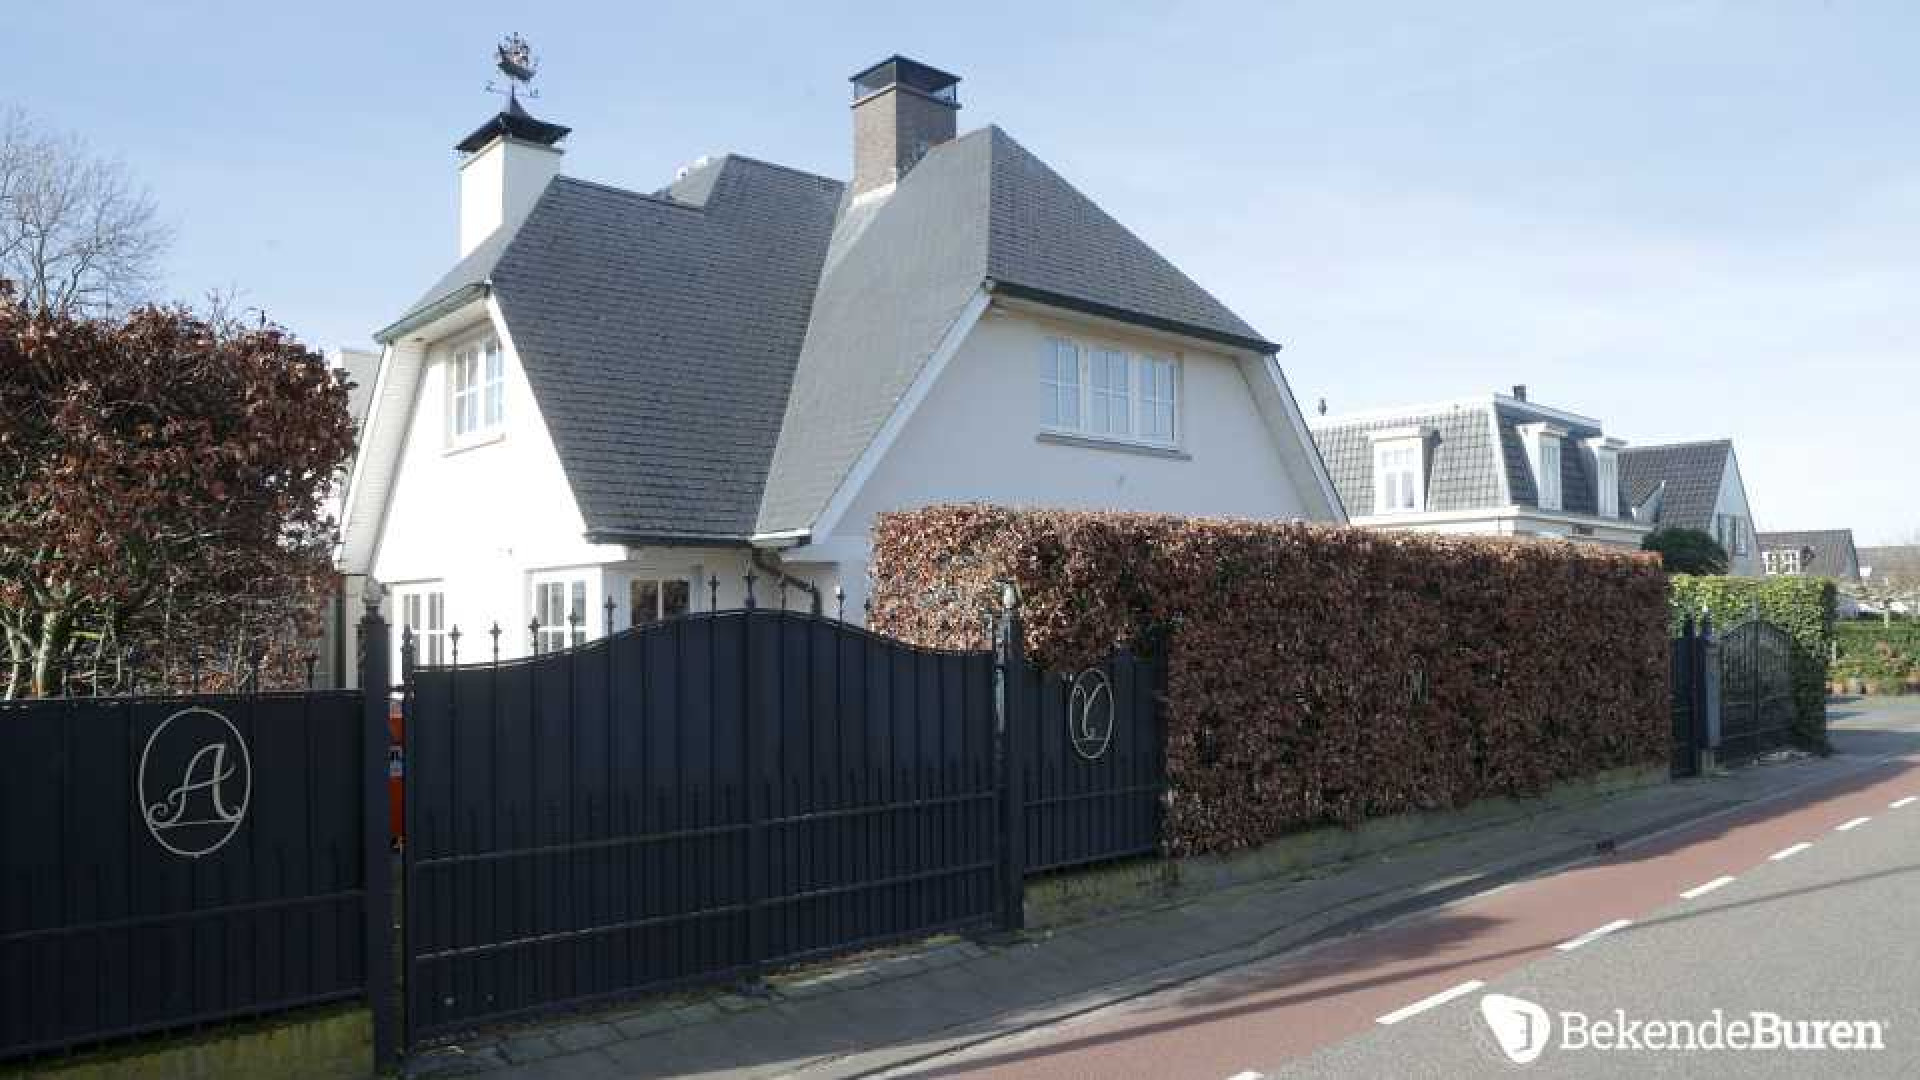 Villa prins Maurits aan de Loosdrechtse Plassen wordt flink verbouwd. Zie foto's